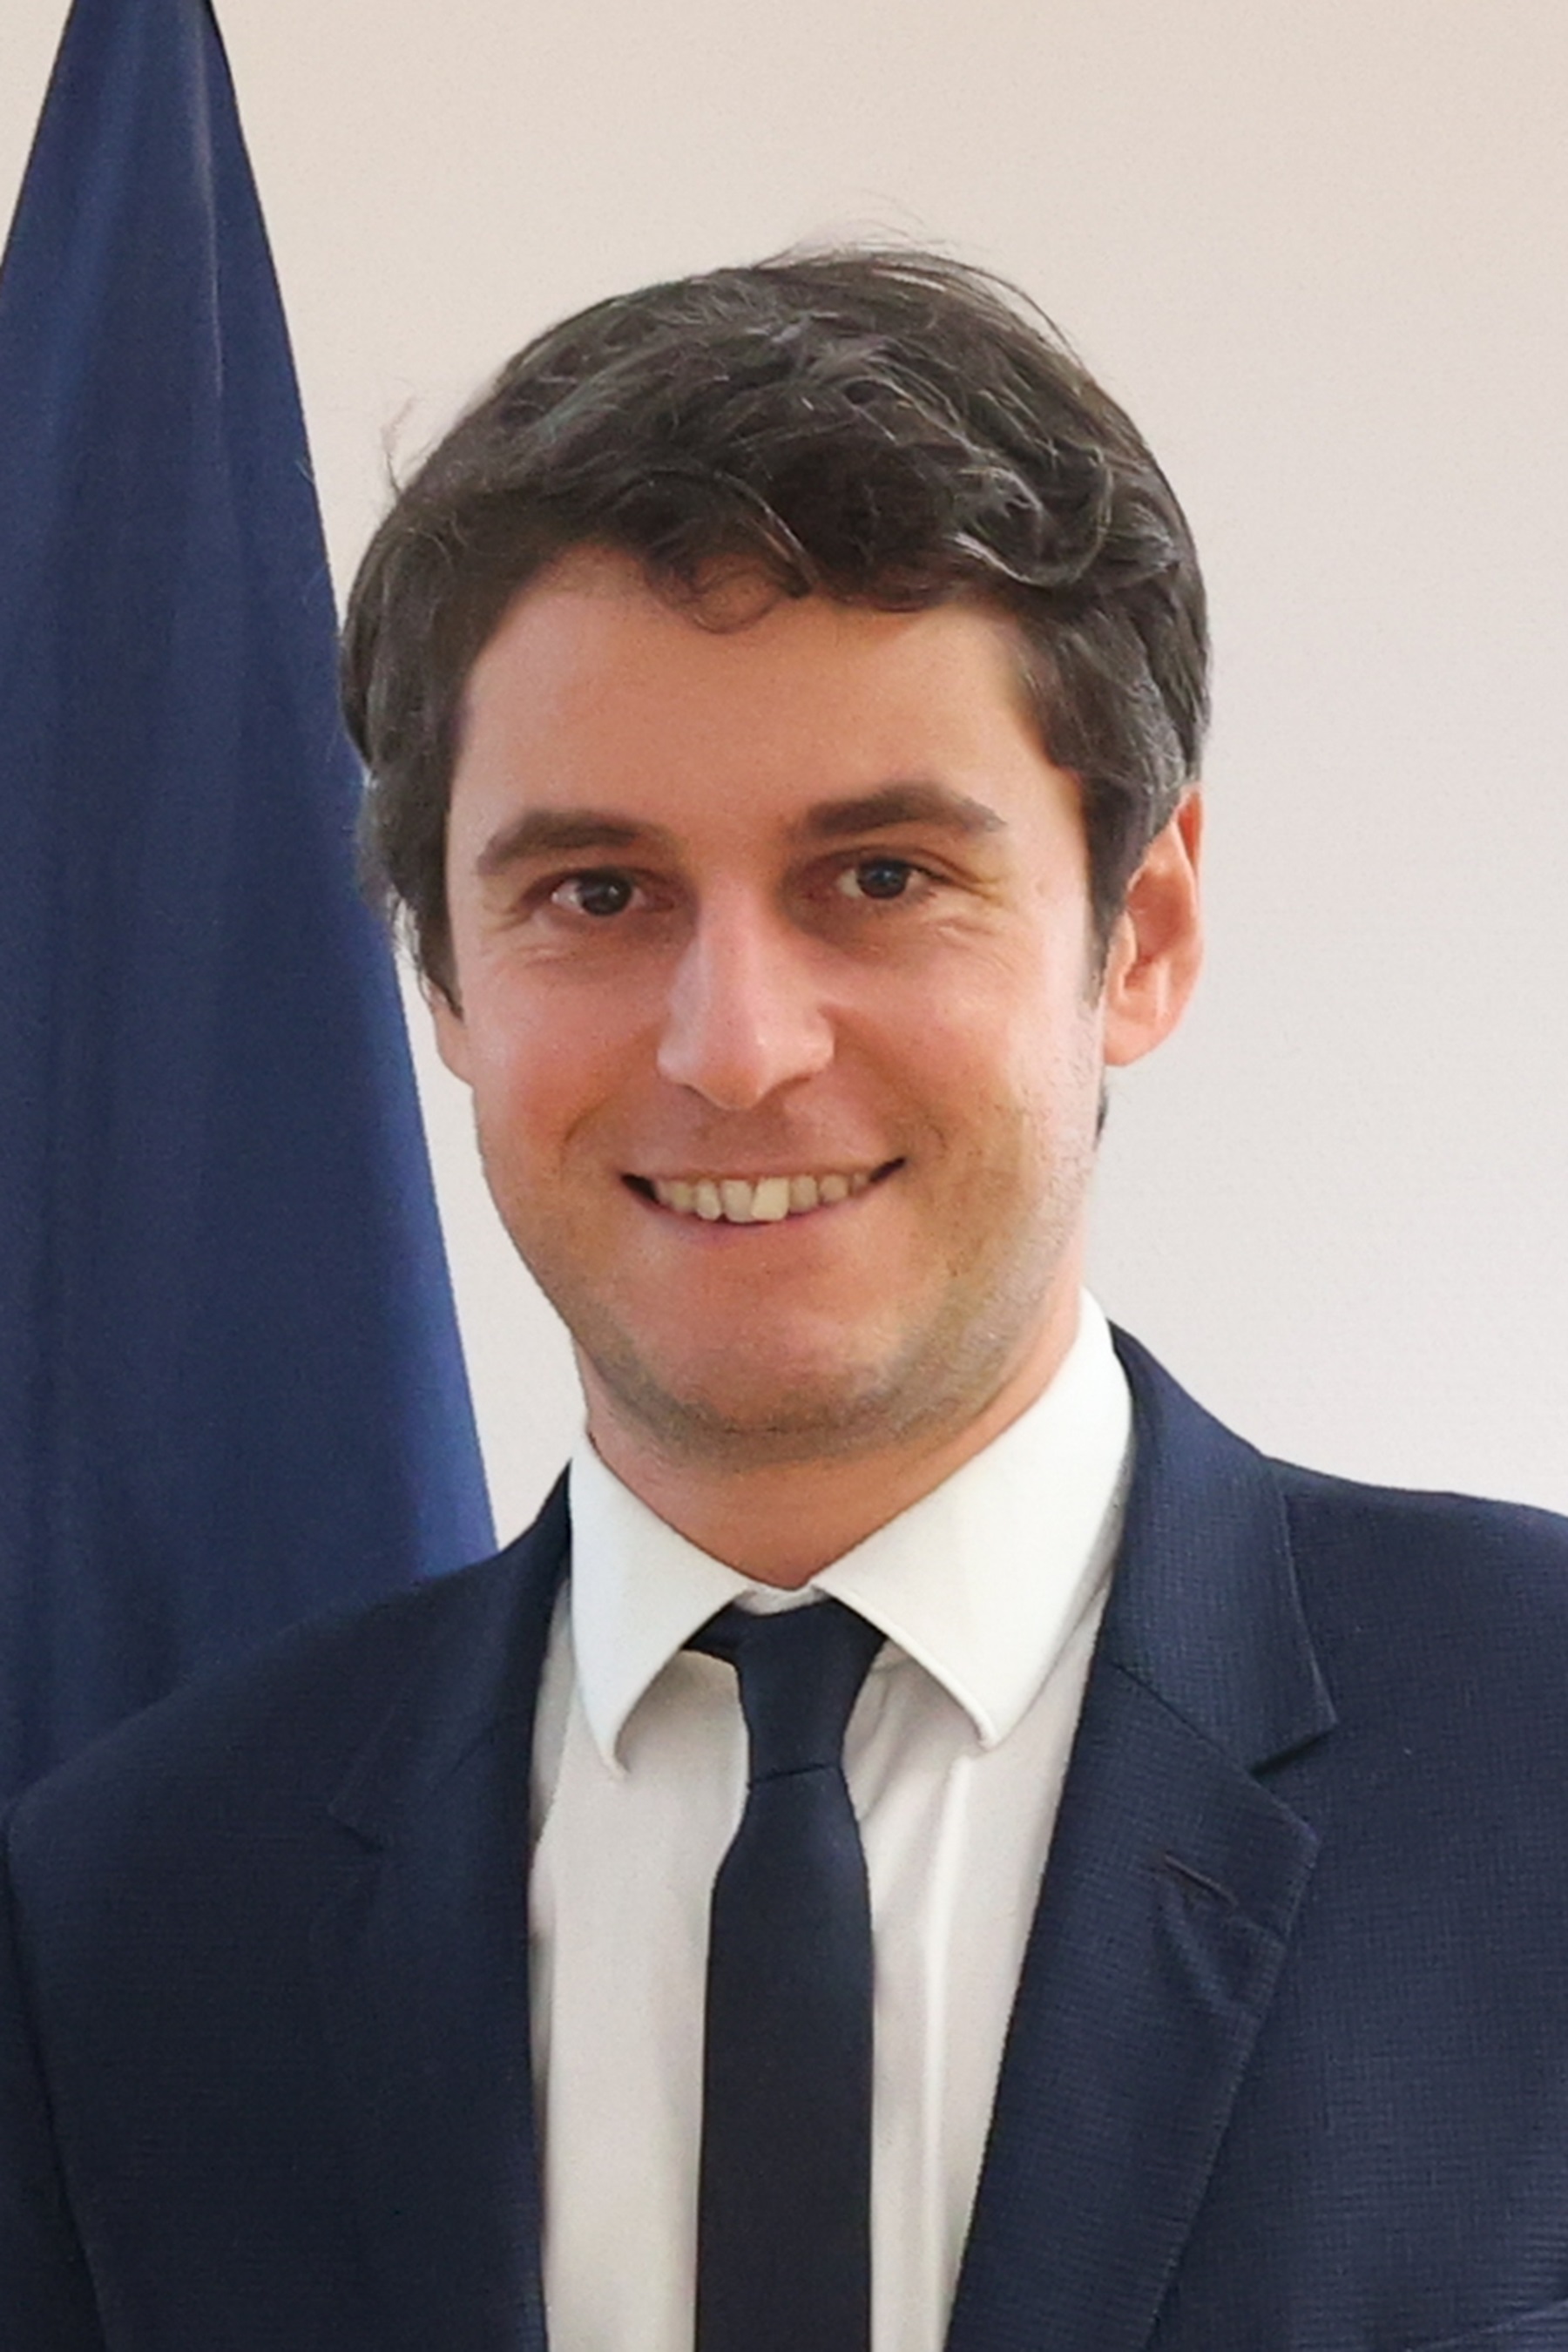 El nou primer ministre de França: Gabriel Attal, de 34 anys